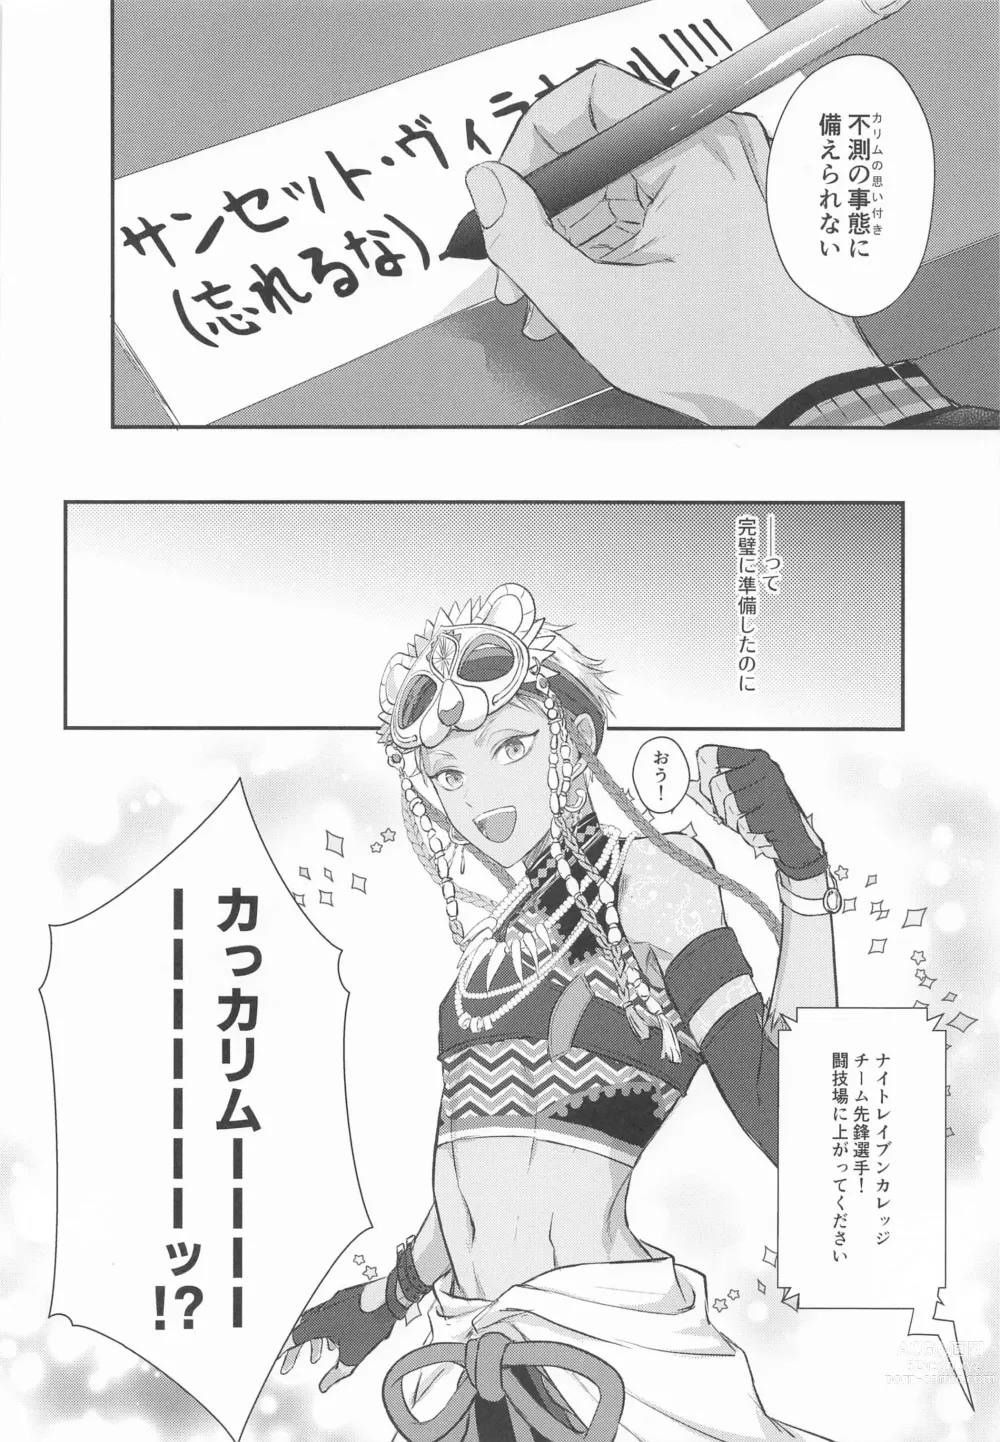 Page 3 of doujinshi Doushite Omae wa Sou